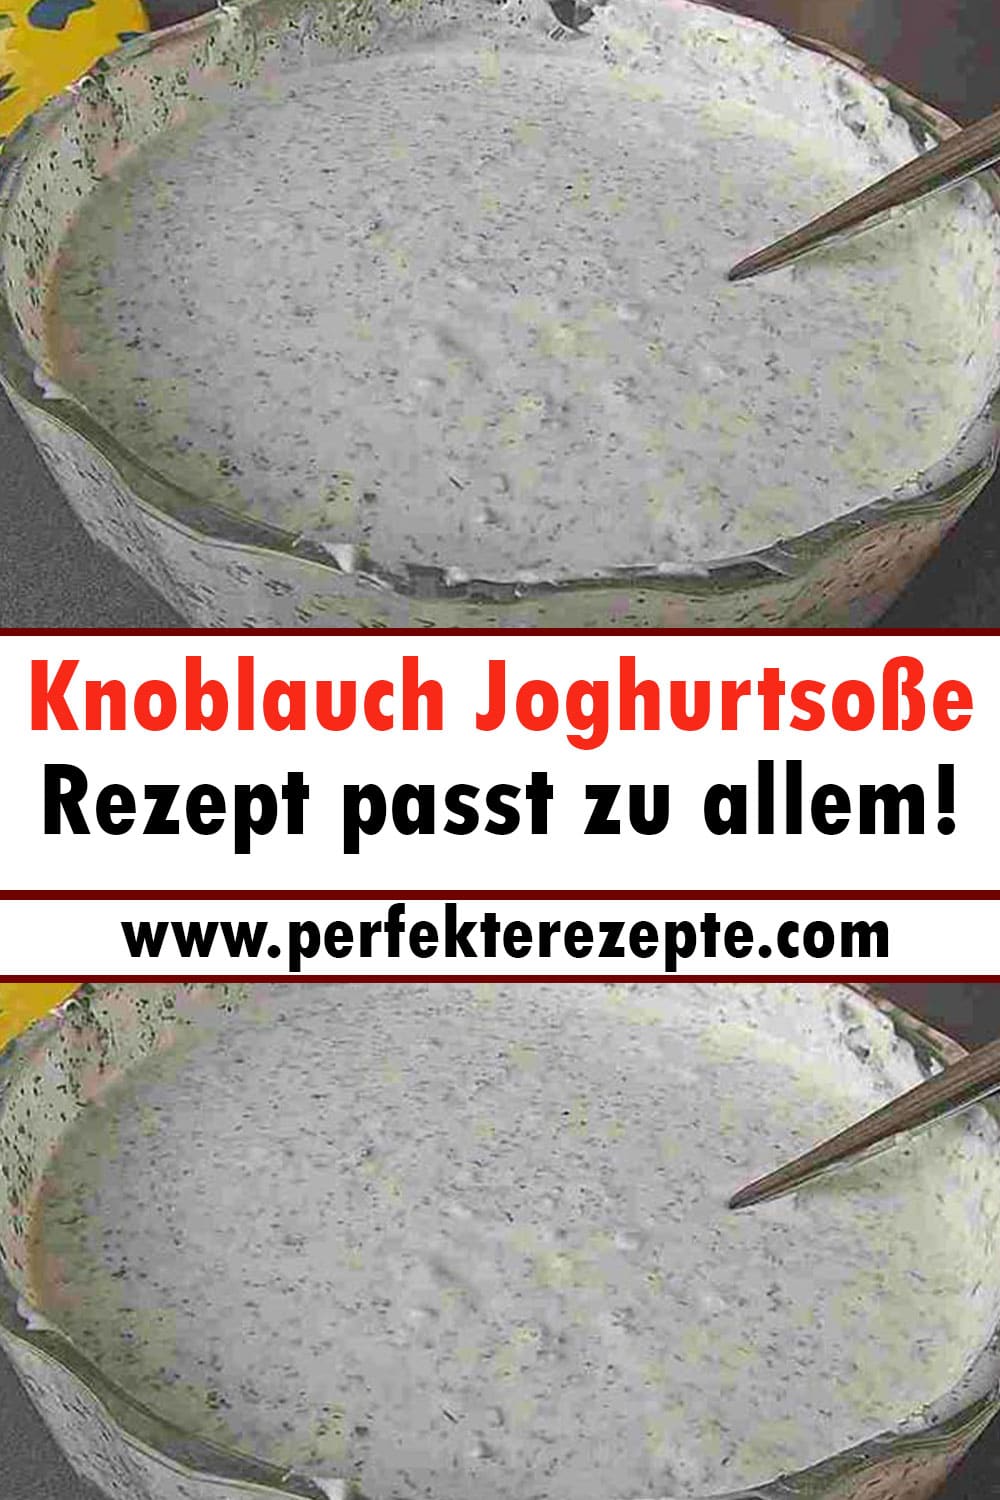 Knoblauch Joghurtsoße Rezept passt zu allem!